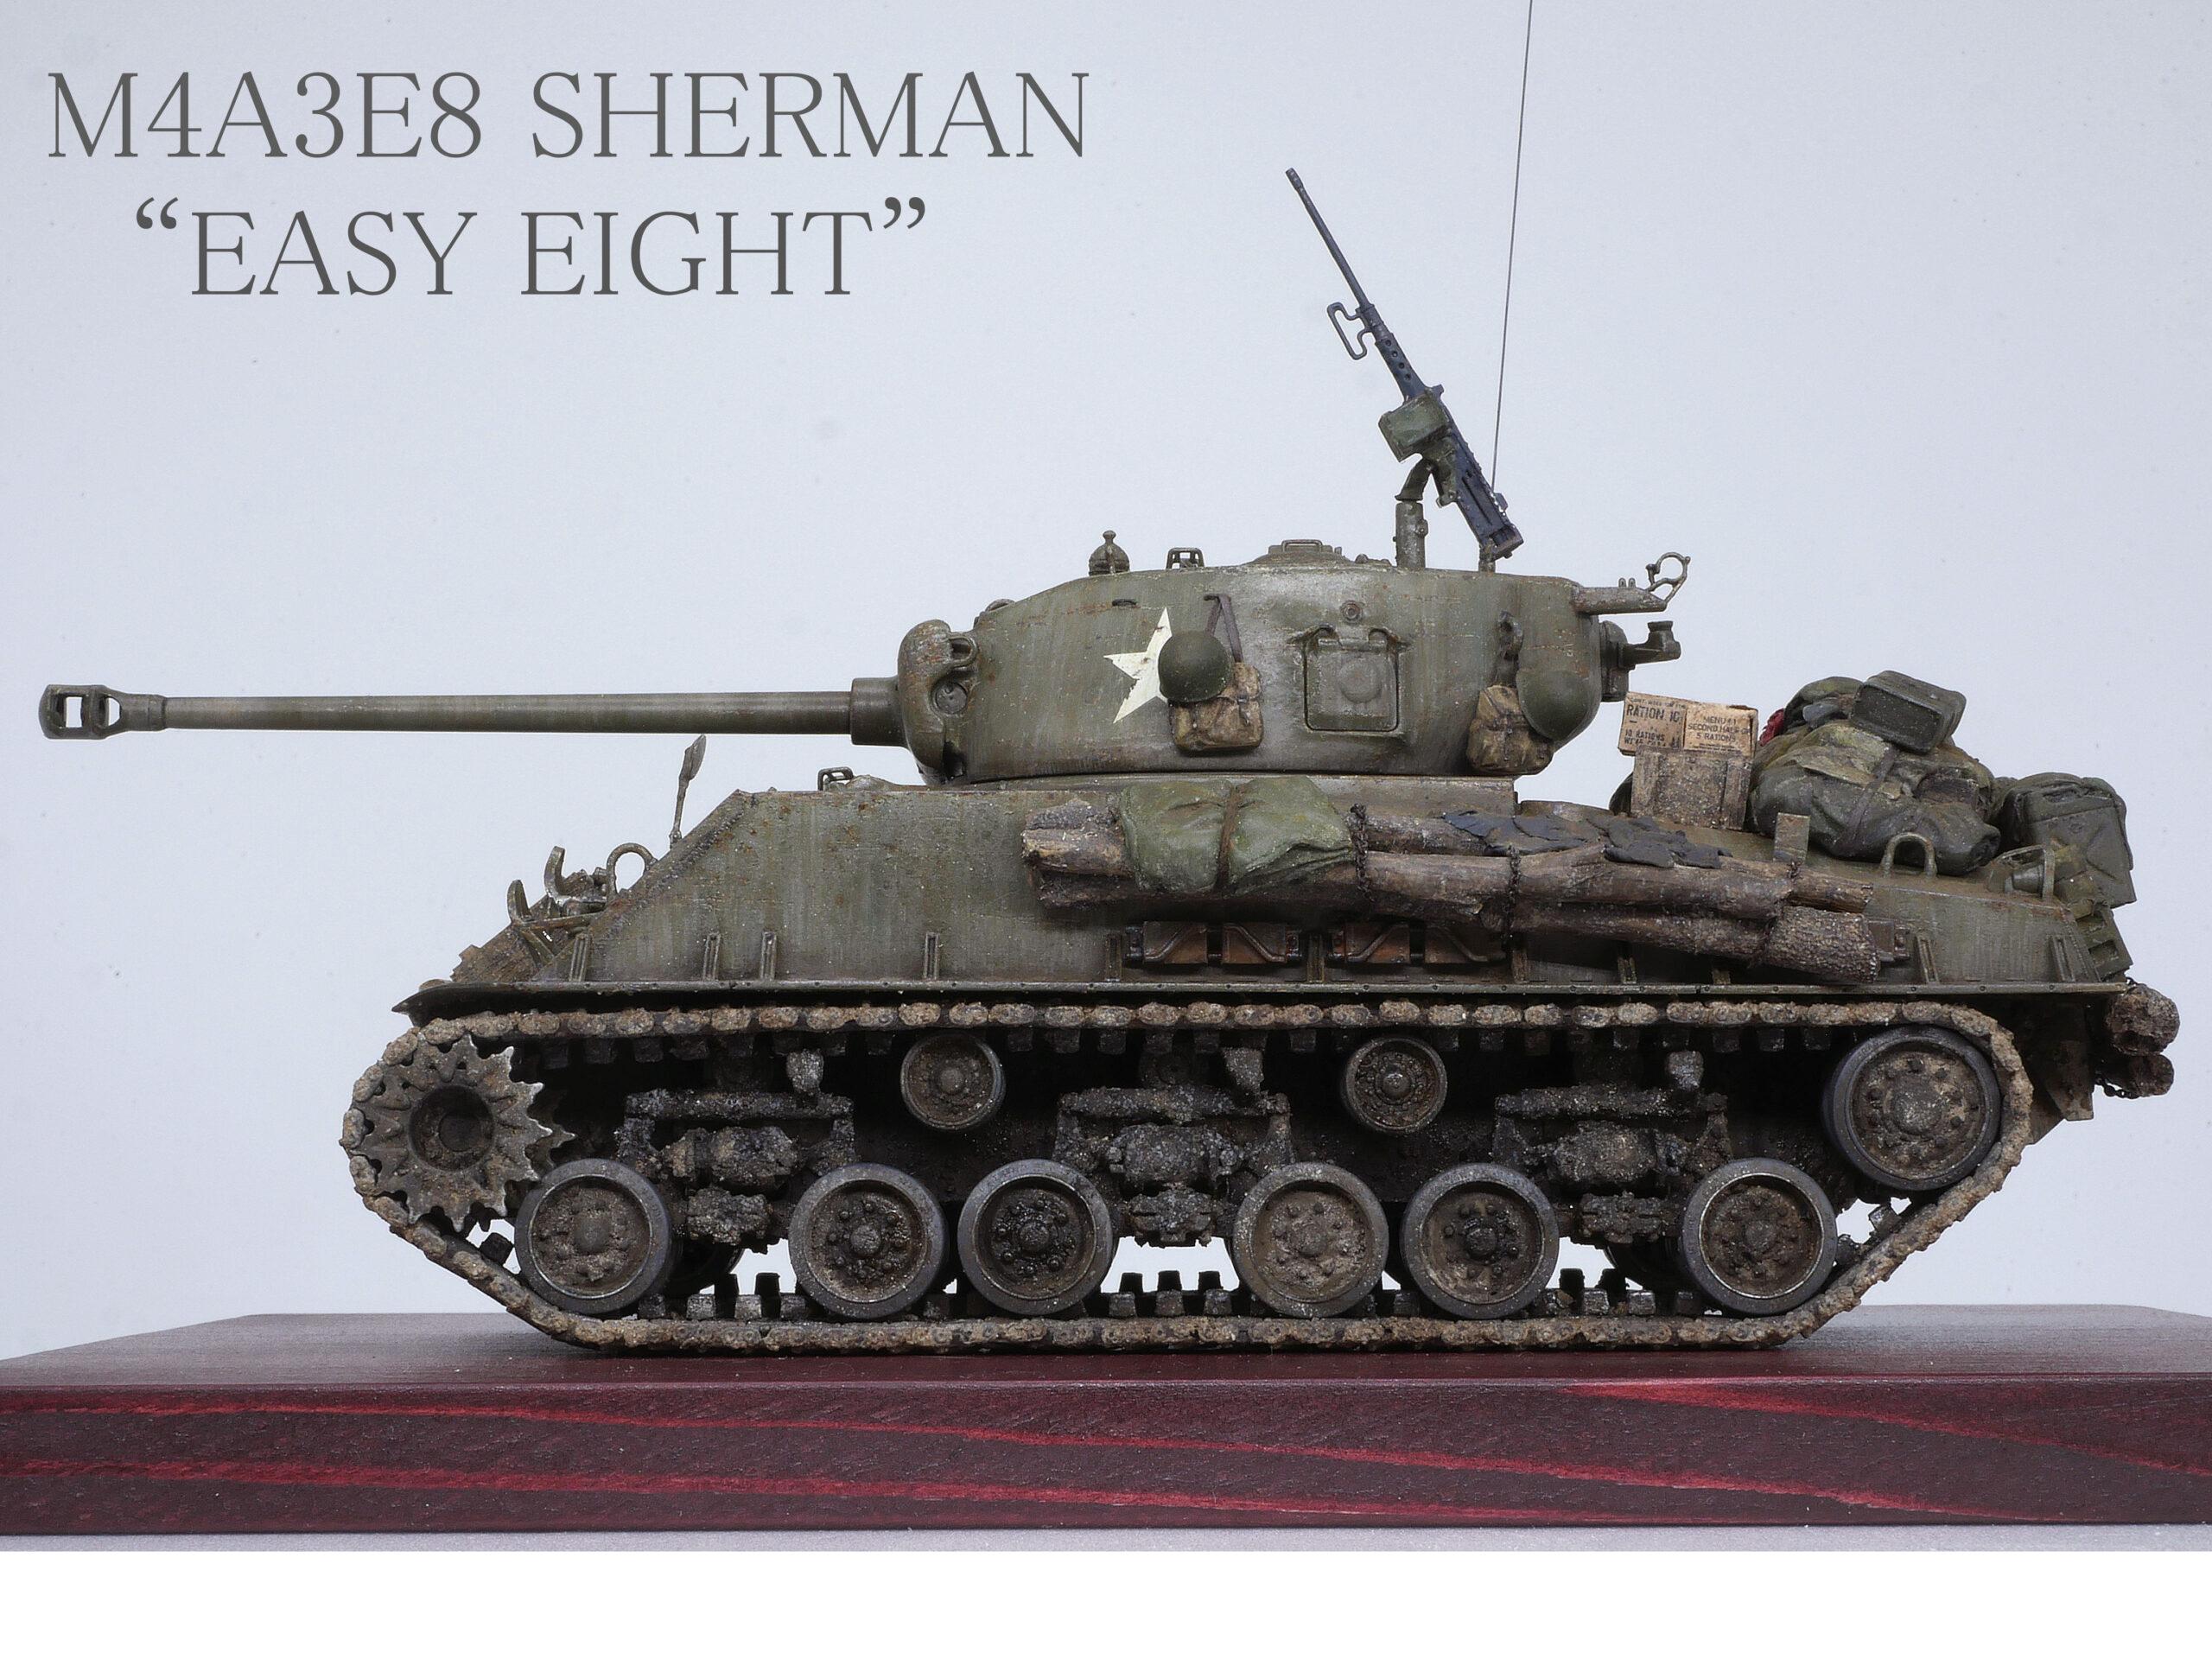 【純正正規】1/35 完成品 ライフィールド M4A3E8 シャーマン イージーエイト RyeFieldModel SHERMAN EASY EIGHT プラモデル スケールモデル M4 戦車 完成品